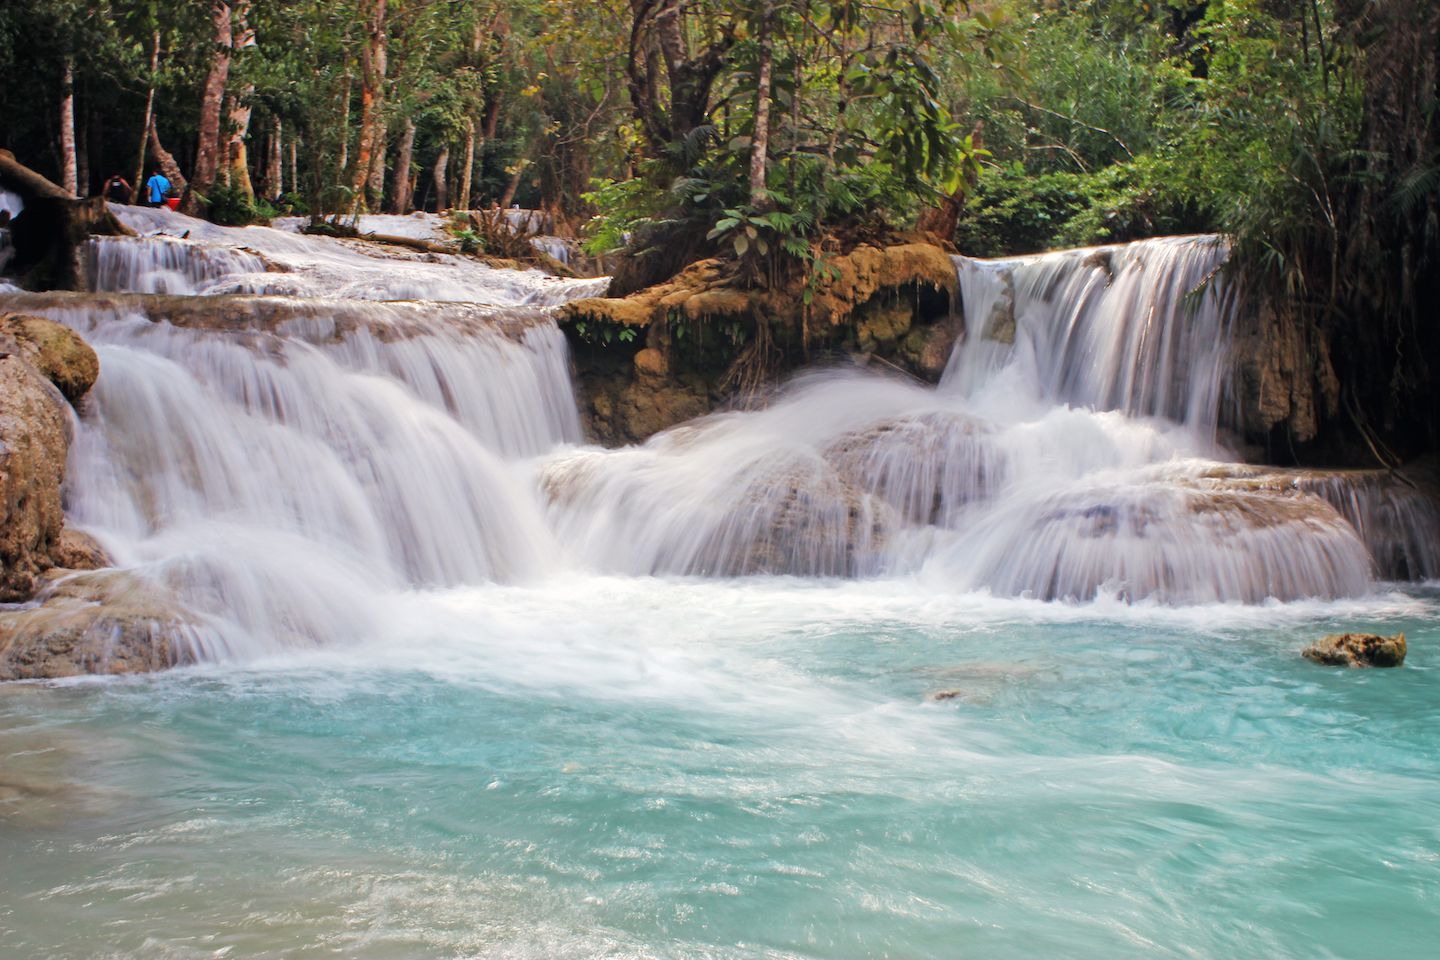 Multi-tiered waterfall at the Kuang Si Waterfall, Luang Prabang, Laos